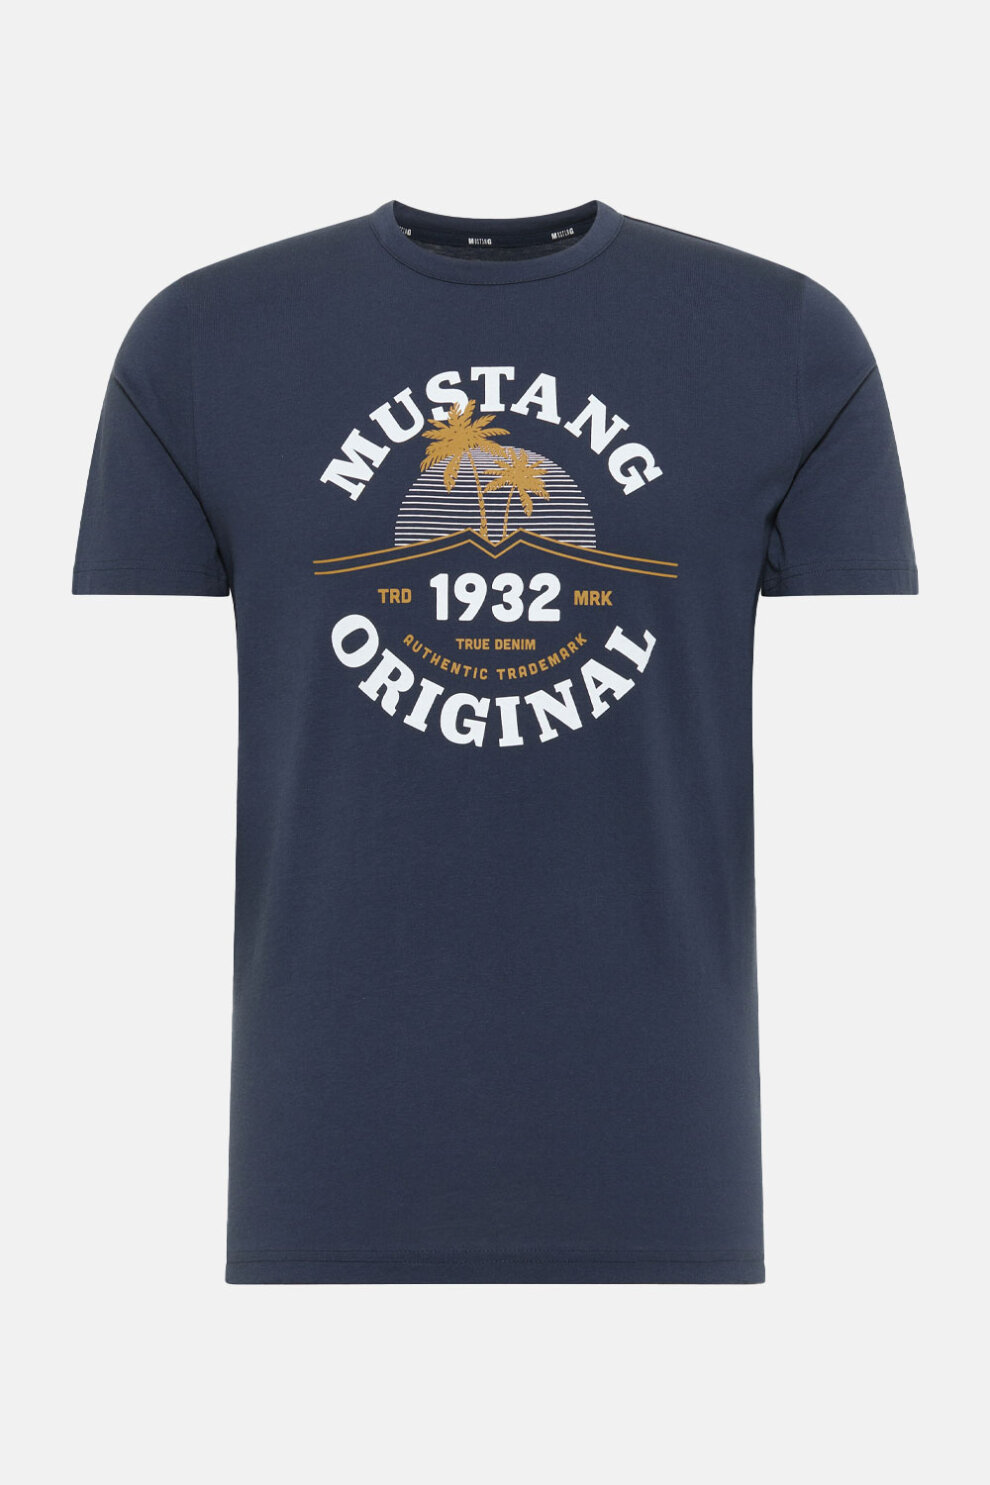 MUŠKARCI - Majice - Mustang majica - Kratki rukavi - Plava